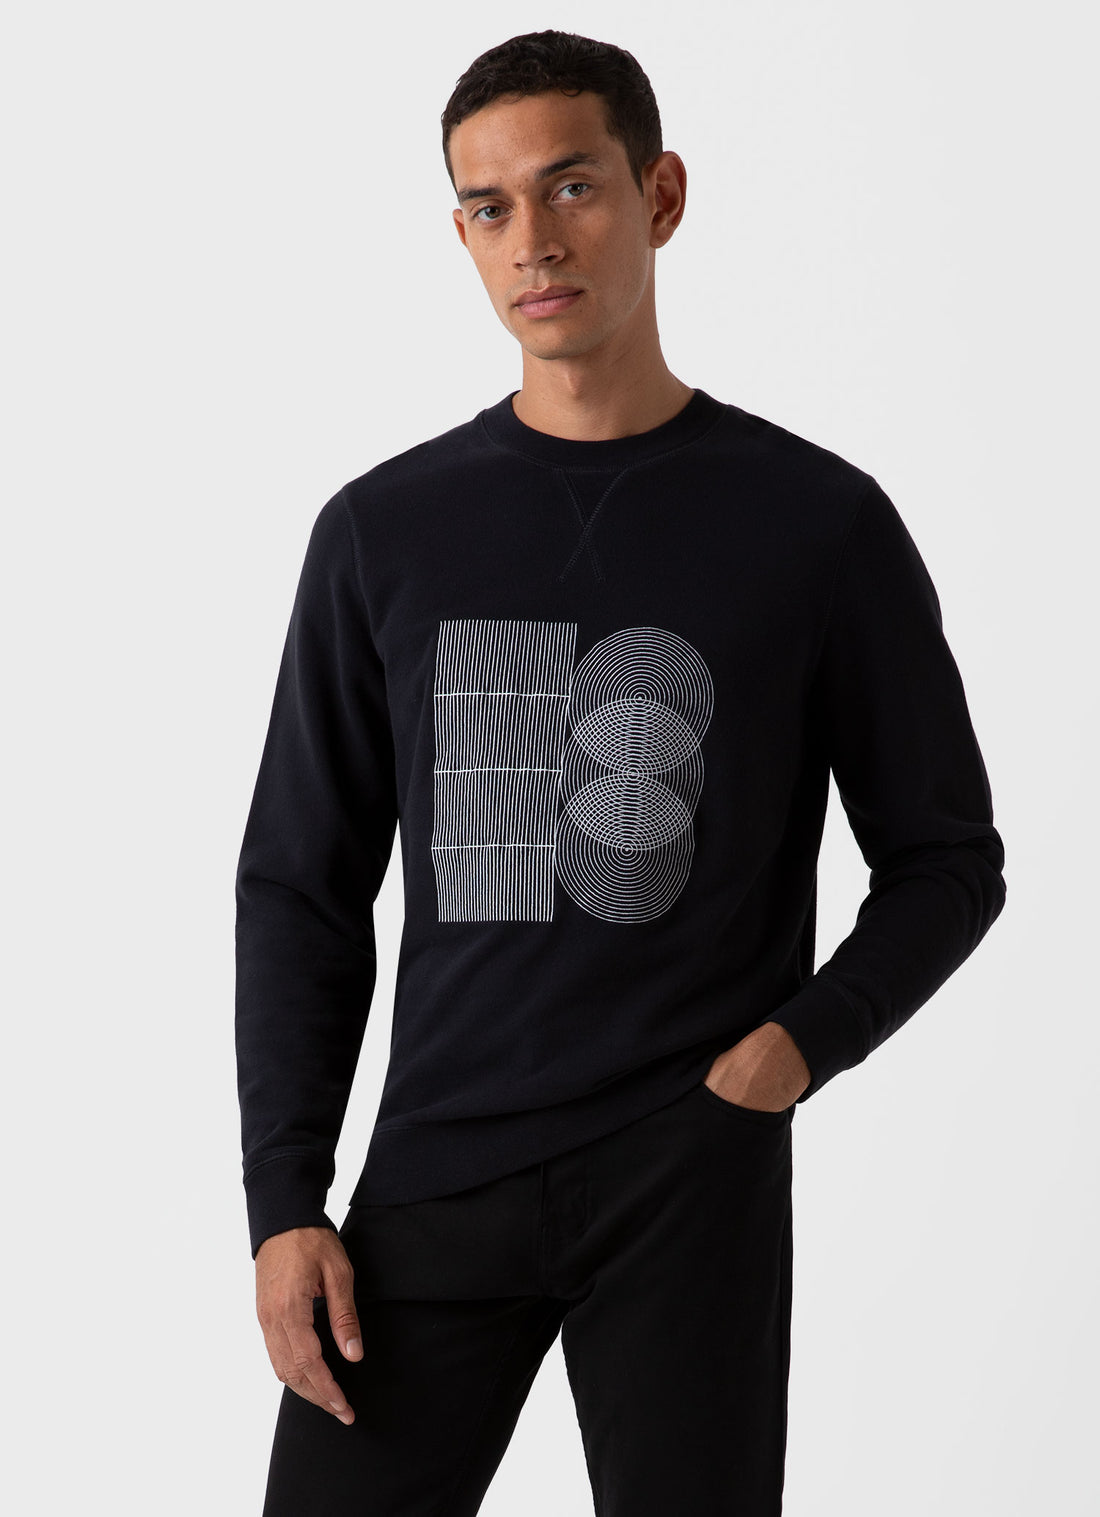 Men's Craig Ward Embroidered Sweatshirt in Black